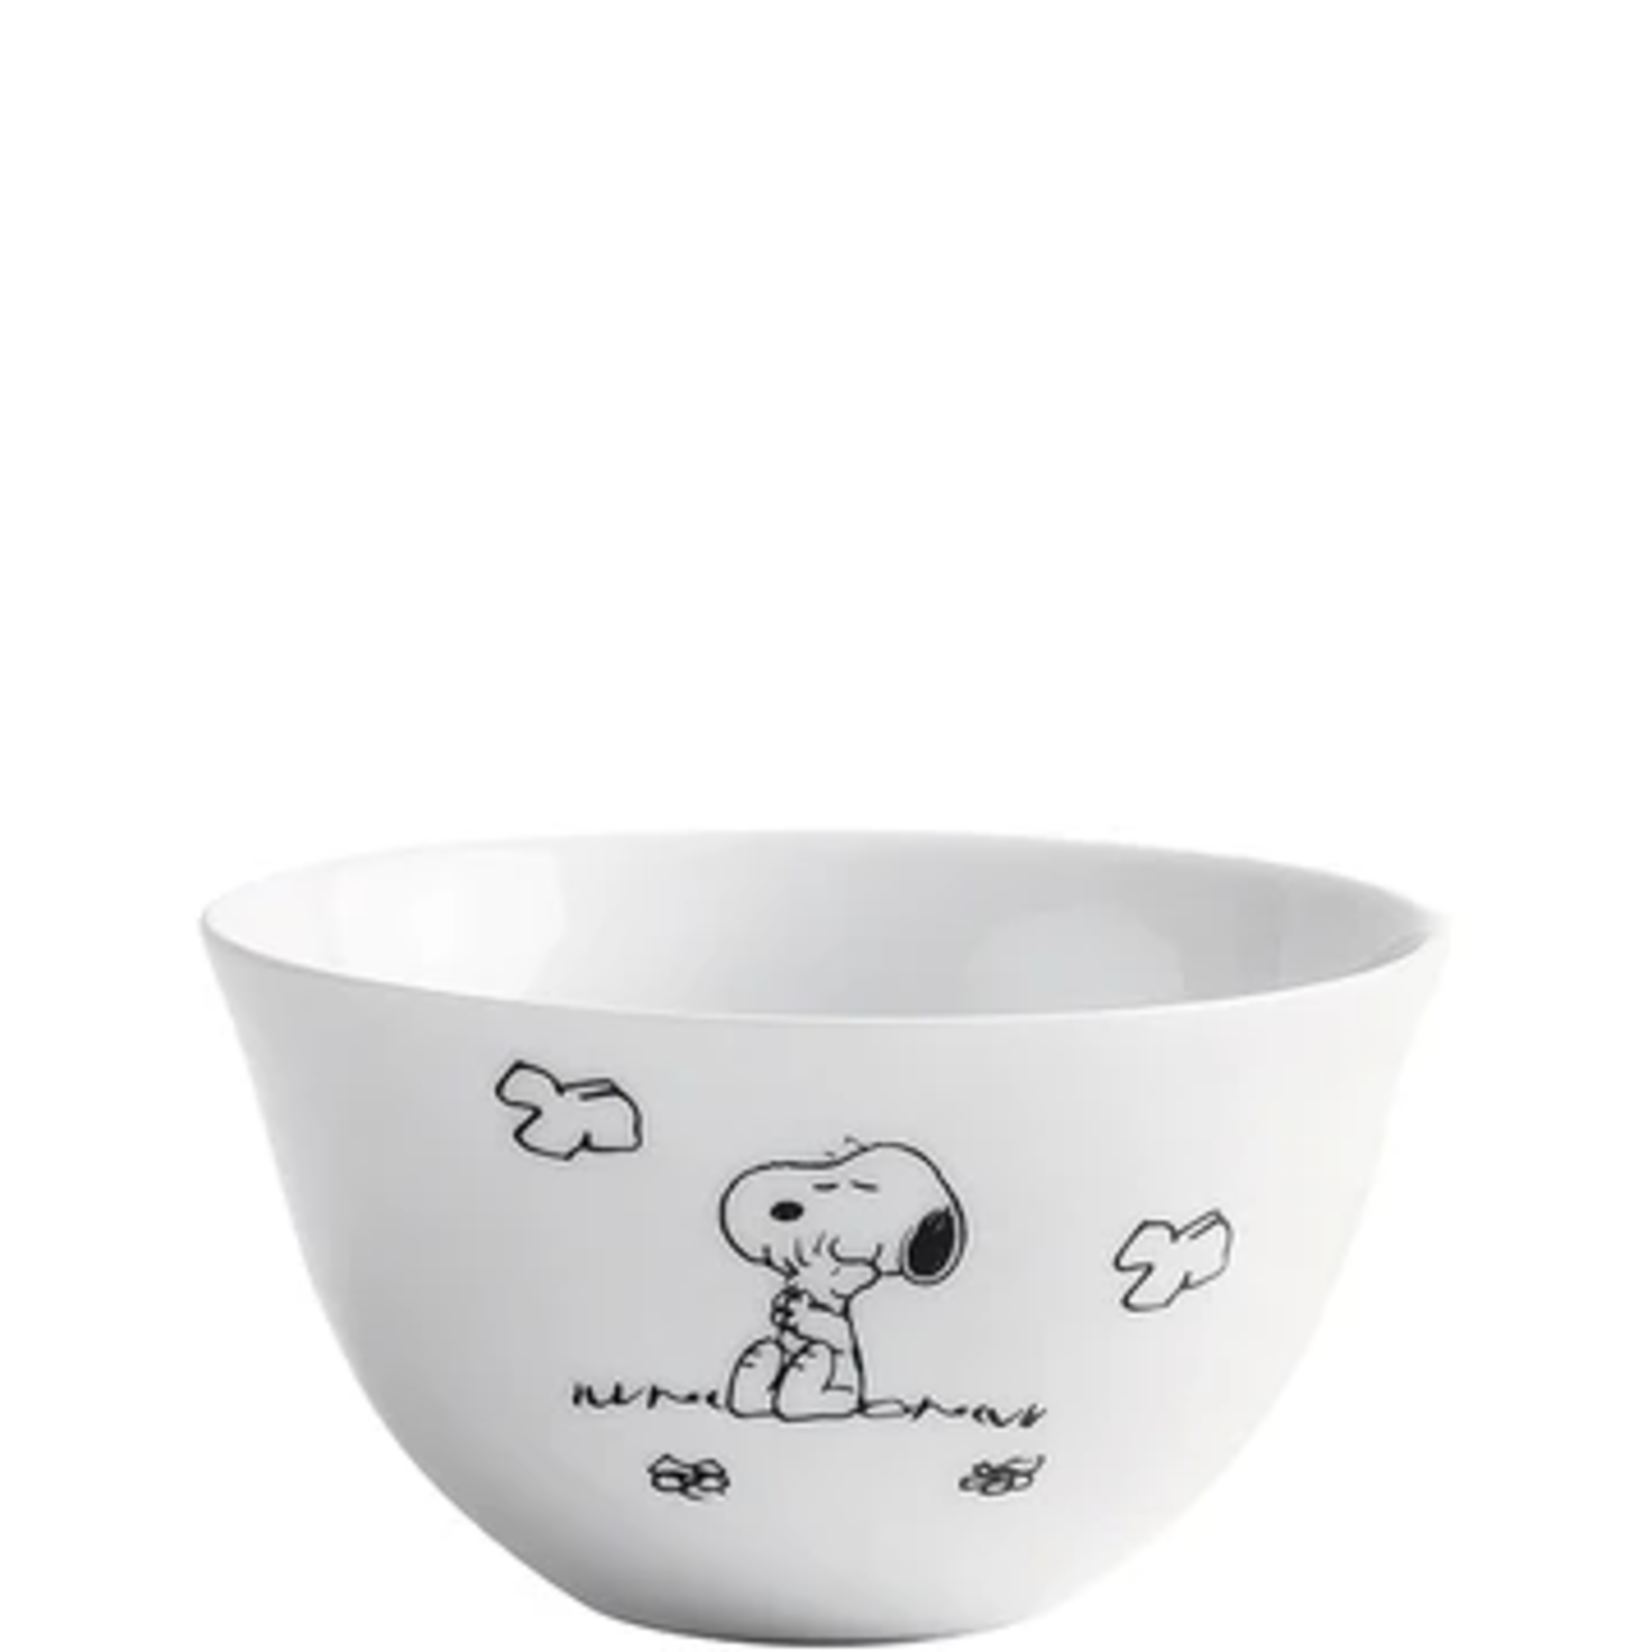 Diverse Merken Snoopy Servies 500 ml bowl Snoopy Peanuts Flower Kahla 50983-schaaltje